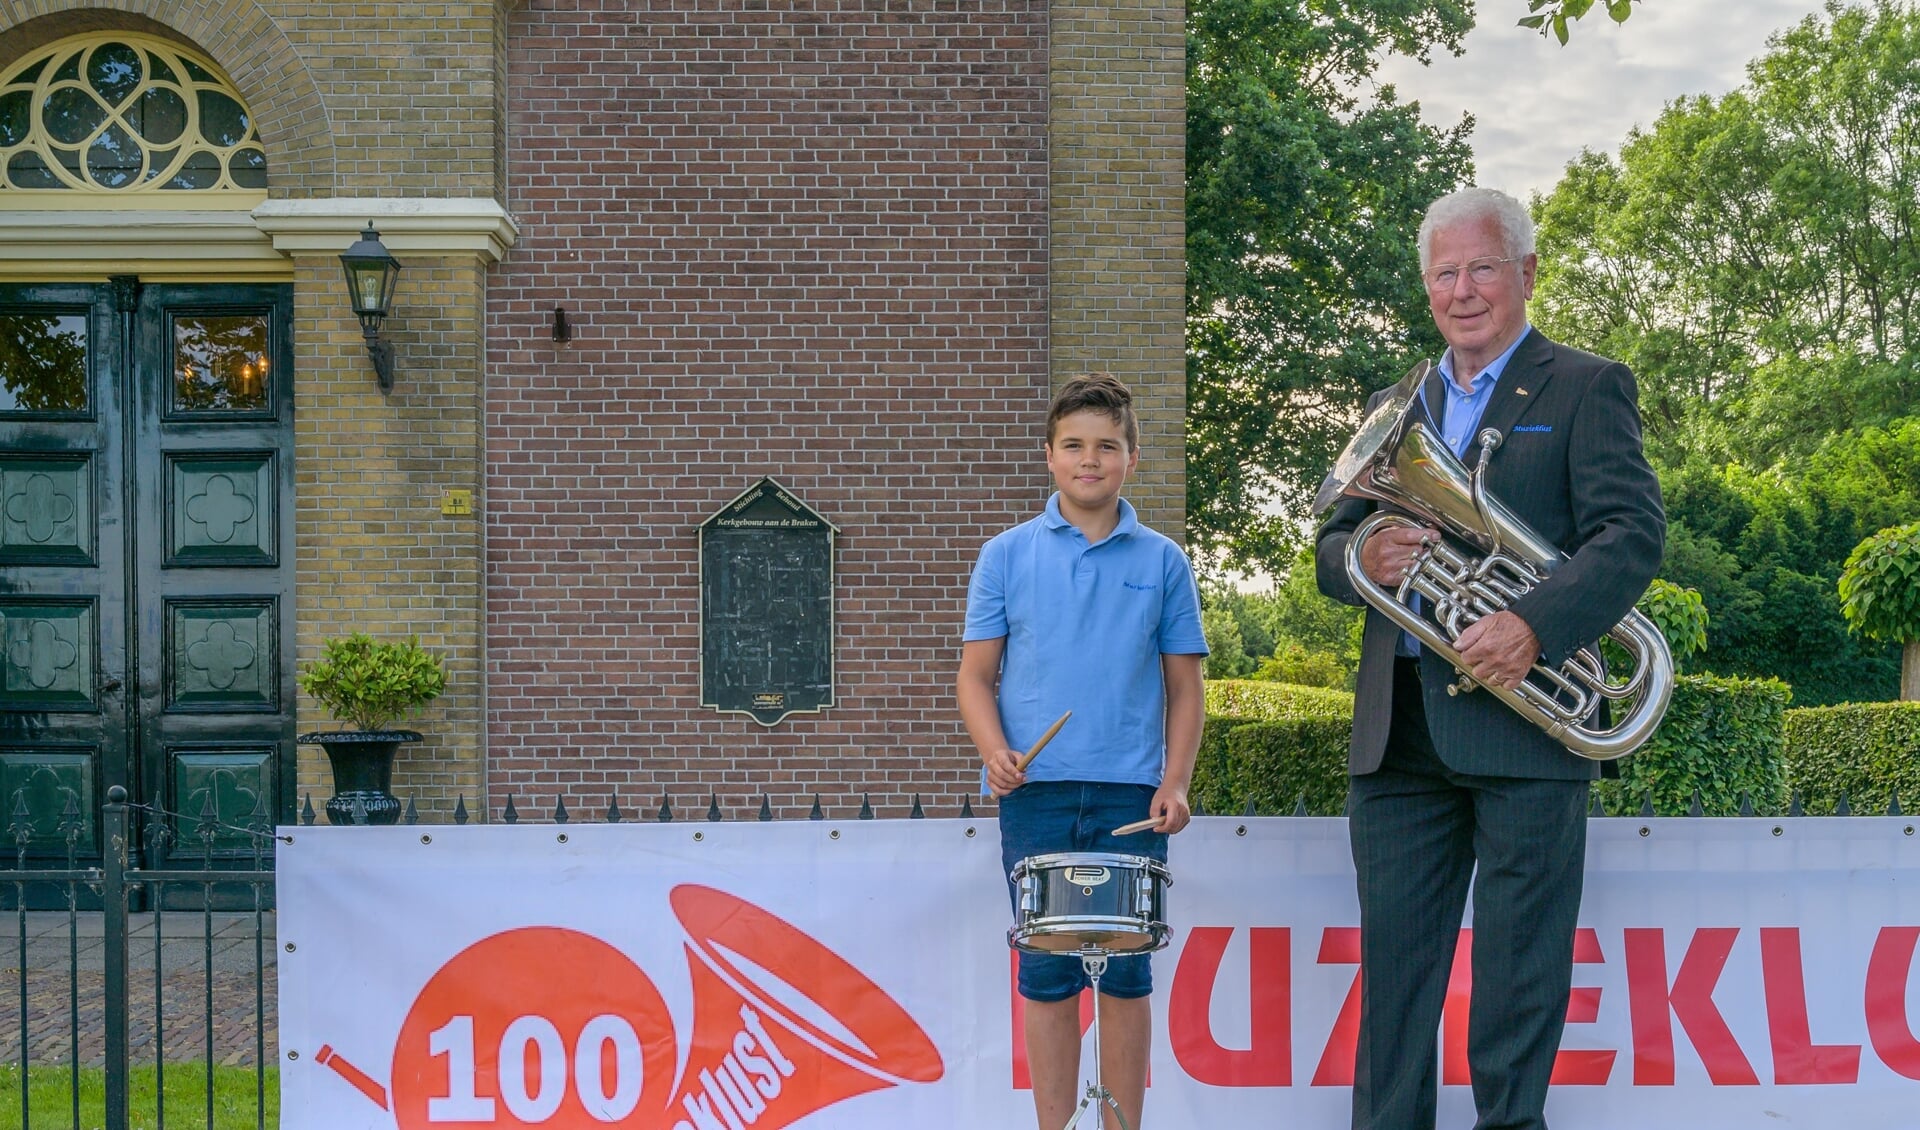 Boris Lutgerink (jongste lid) en Martien de Boer (oudste lid) van Muzieklust.